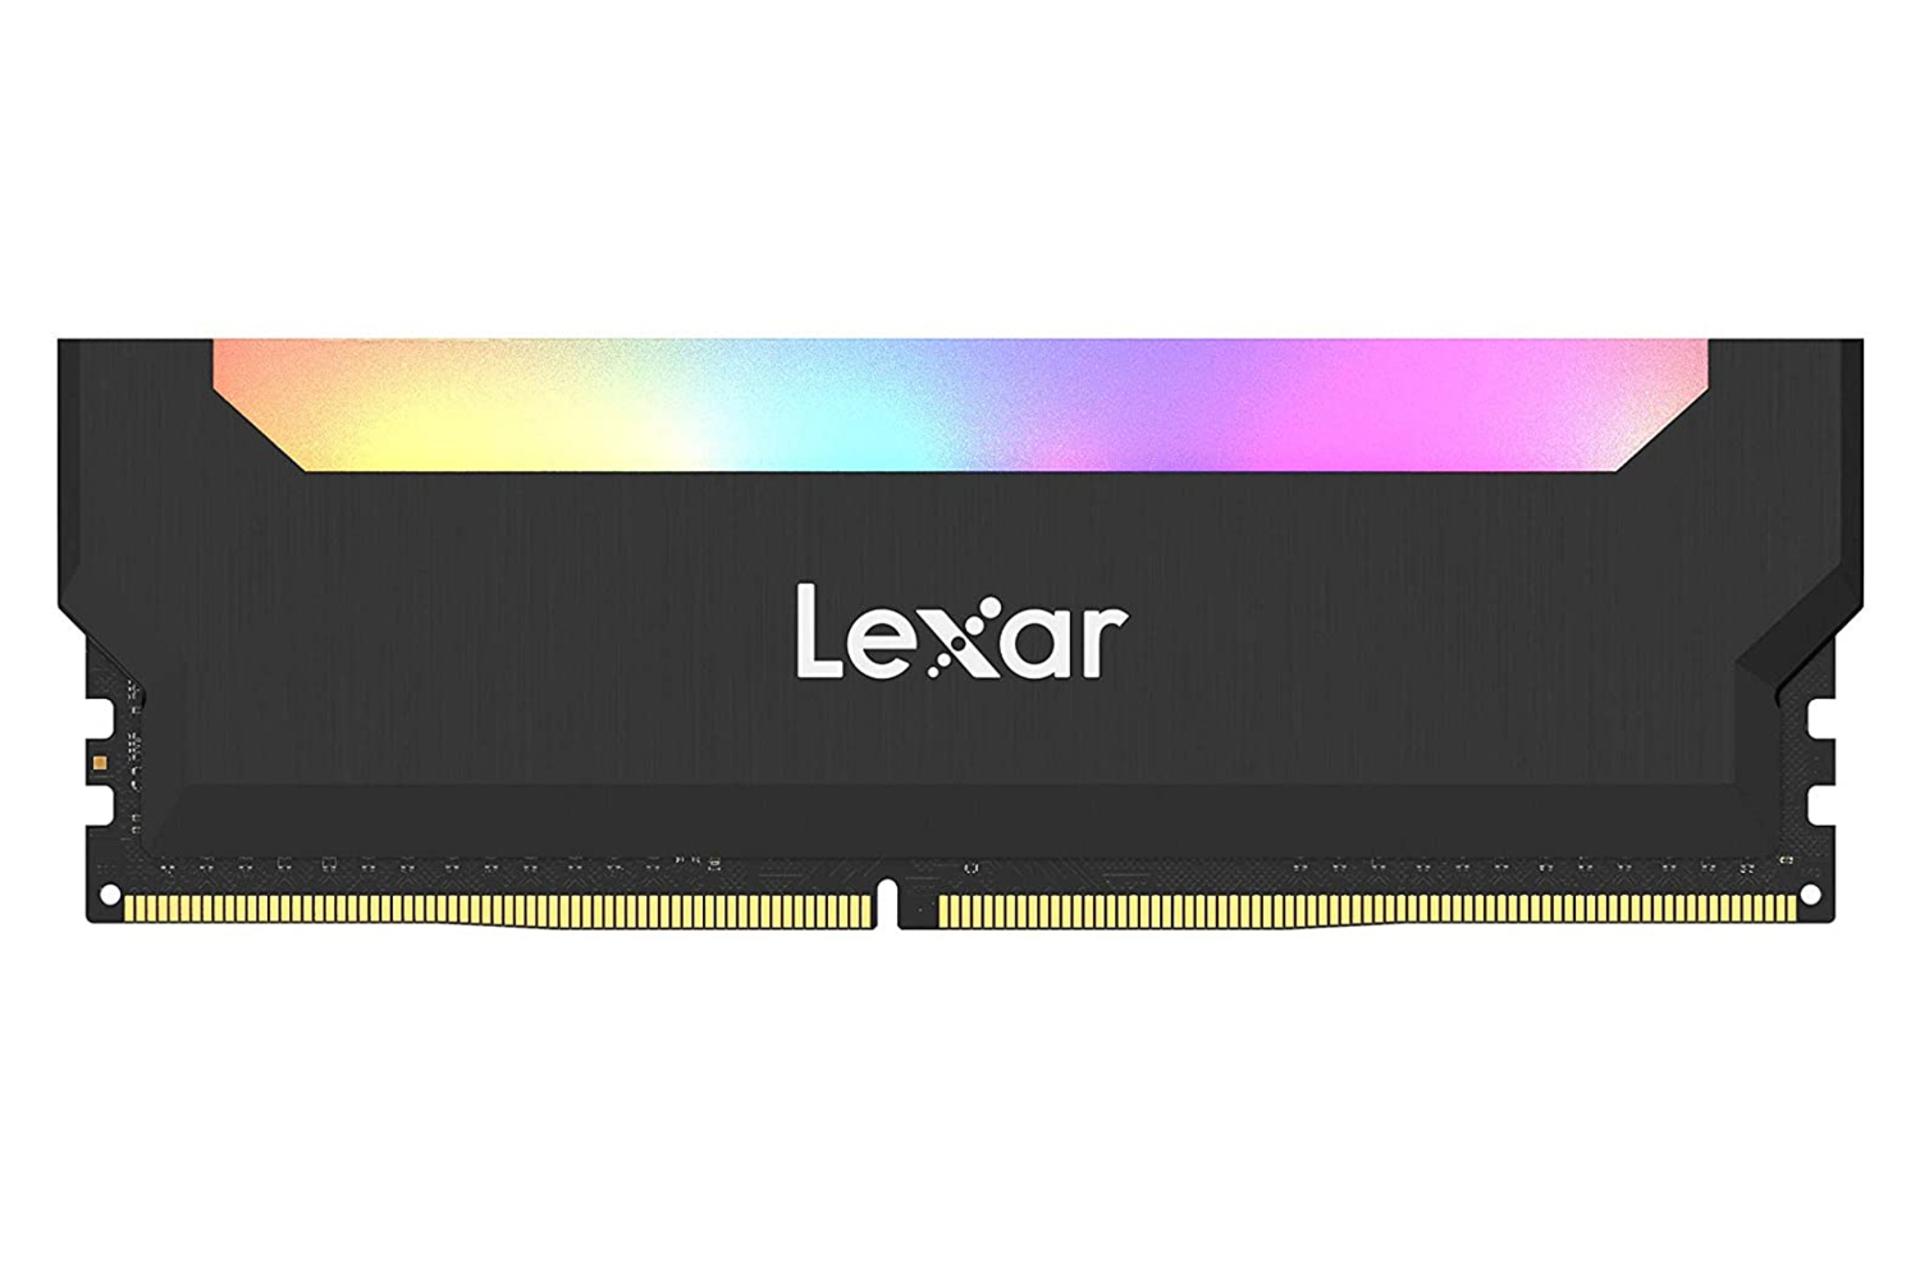 رم لکسار Hades RGB ظرفیت 8 گیگابایت از نوع DDR4-3200